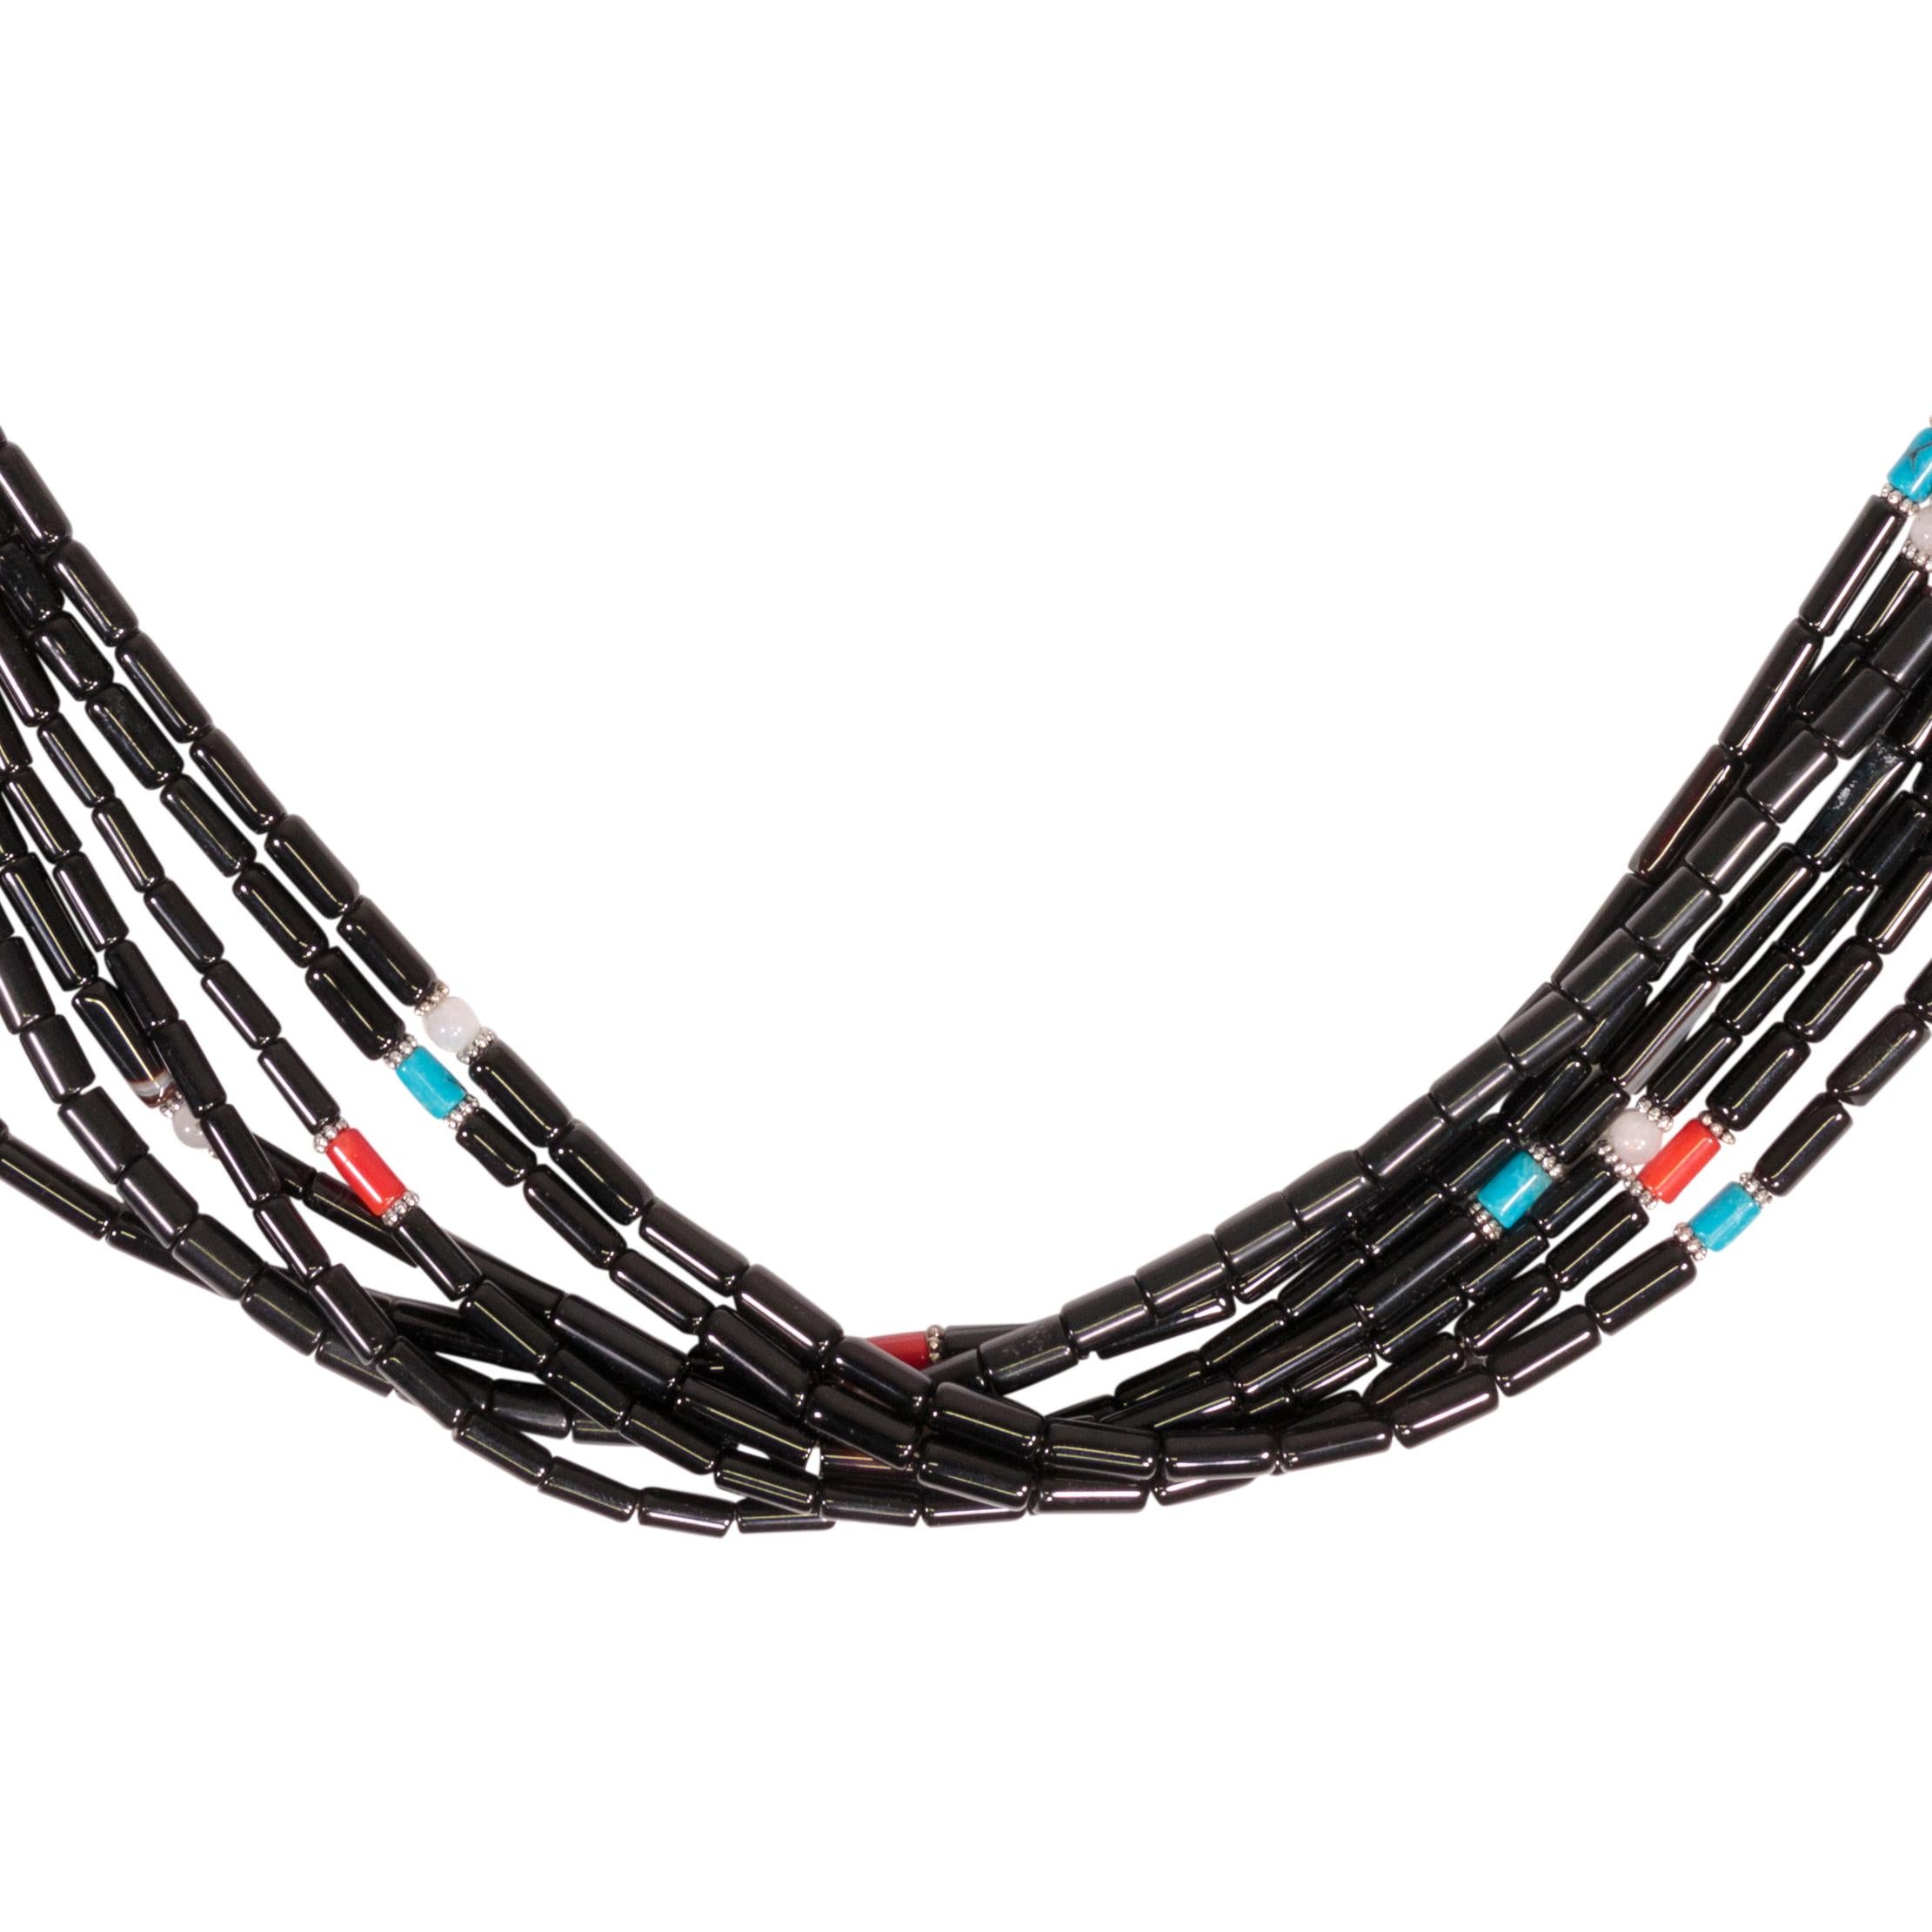 Mehrreihige Halskette, signiert von Tommy Singer. Onyx-Röhrenperlen mit Akzentperlen aus Silber und 14k Gold, Türkis, Türkis und Koralle. 

Tommy Singer (1940 - 31. Mai 2014) war ein weltberühmter Navajo-Silberschmied, dessen unverwechselbarer Stil